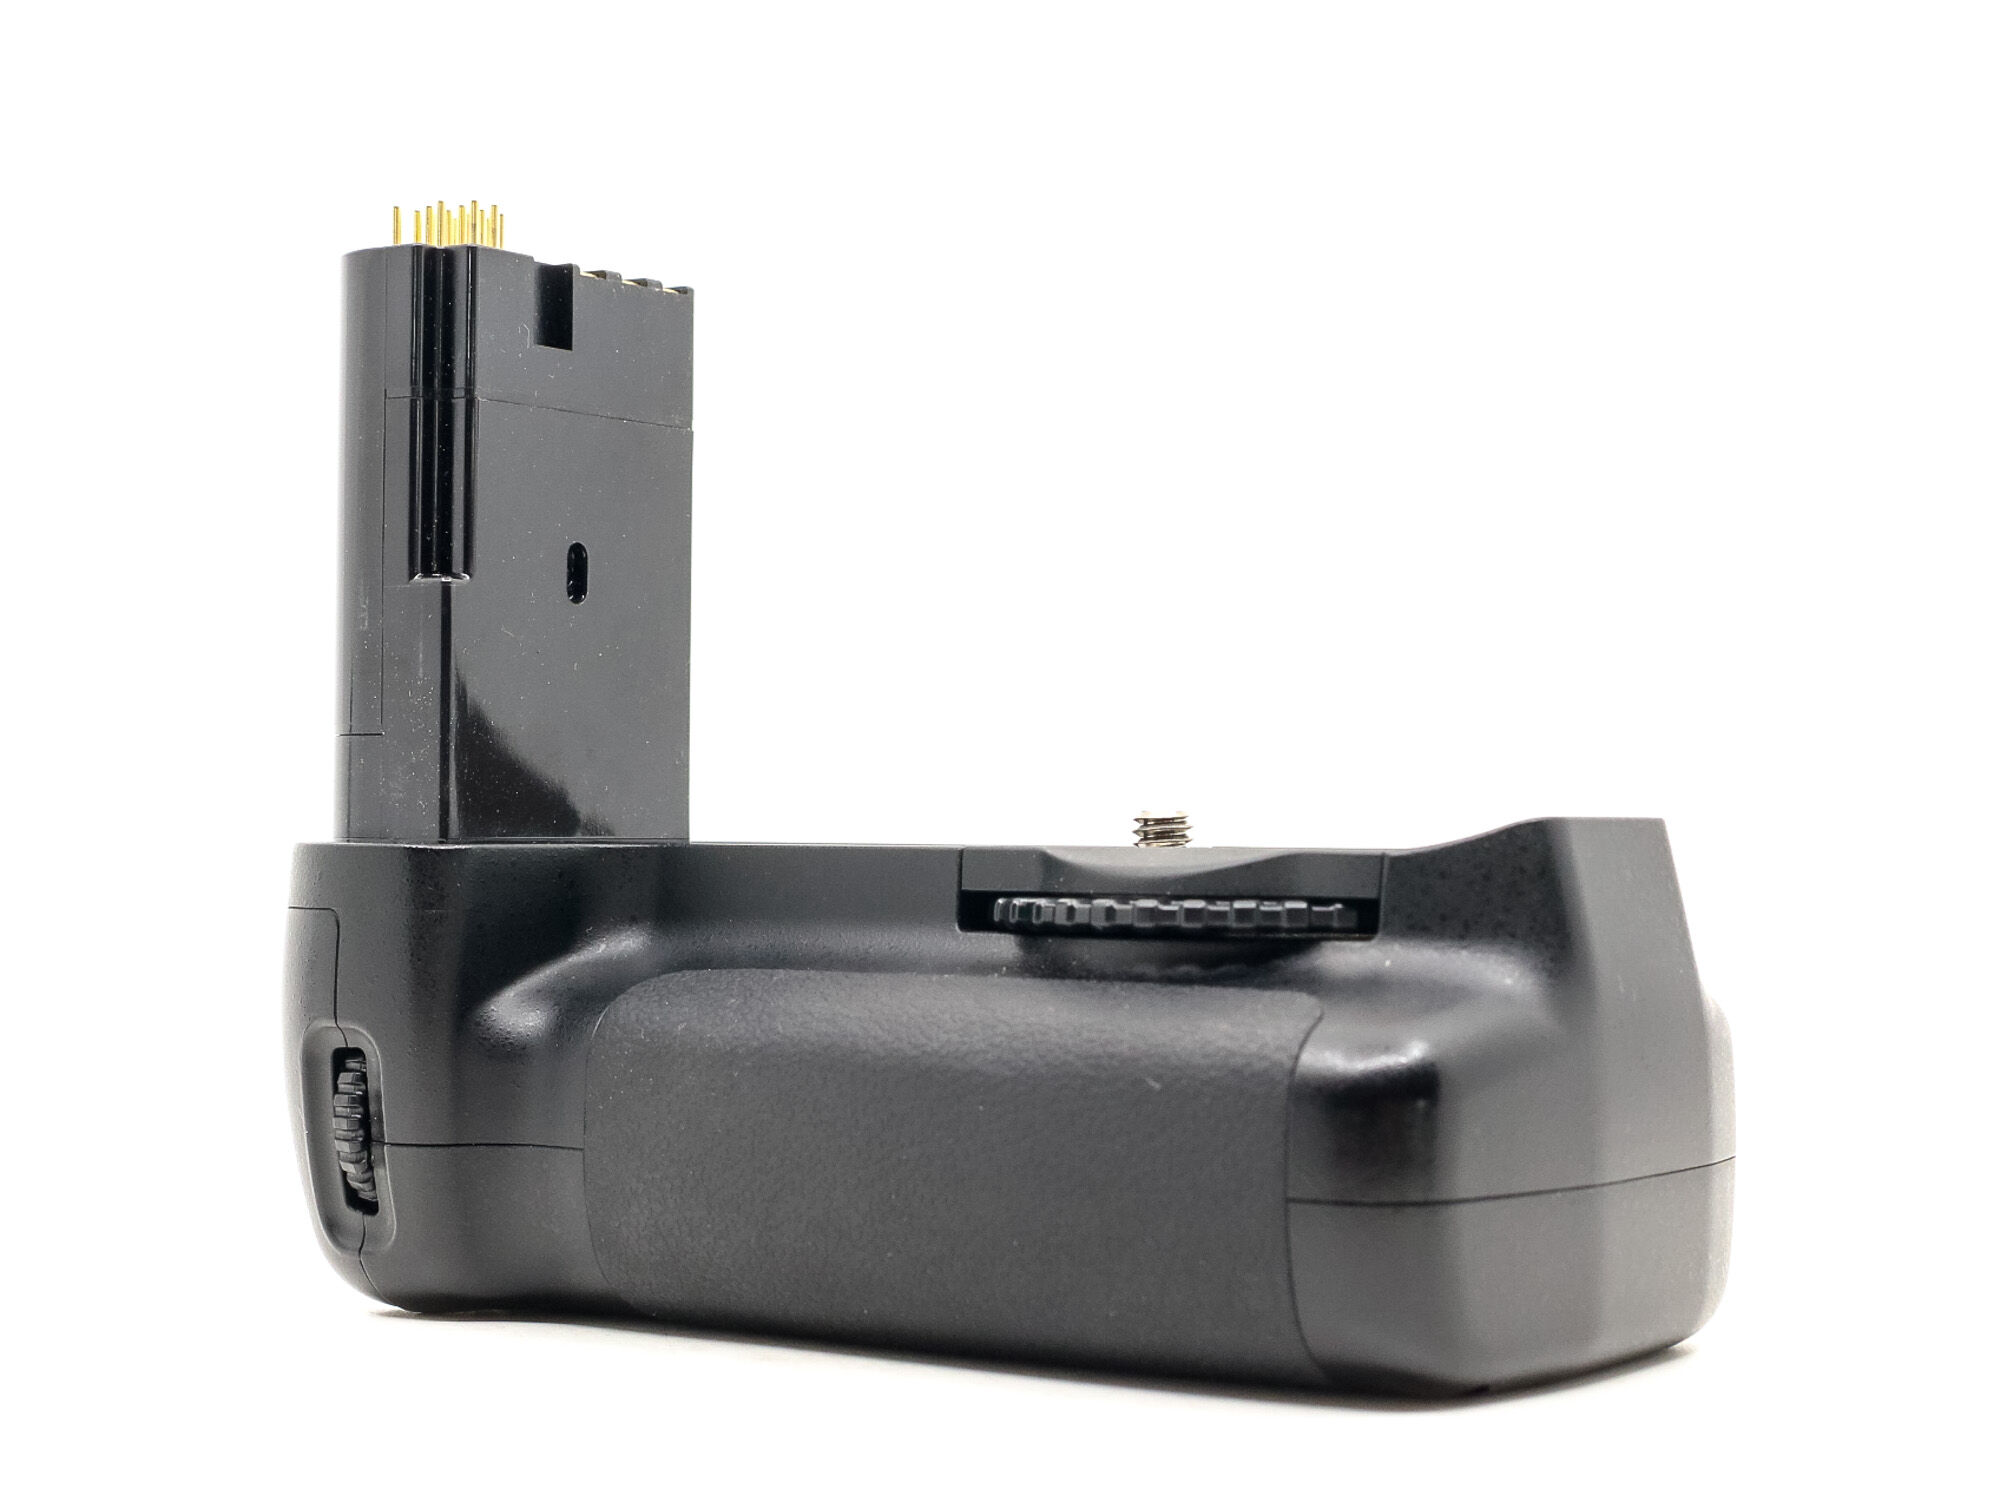 Nikon MB-D80 Battery Grip (Condition: Excellent)